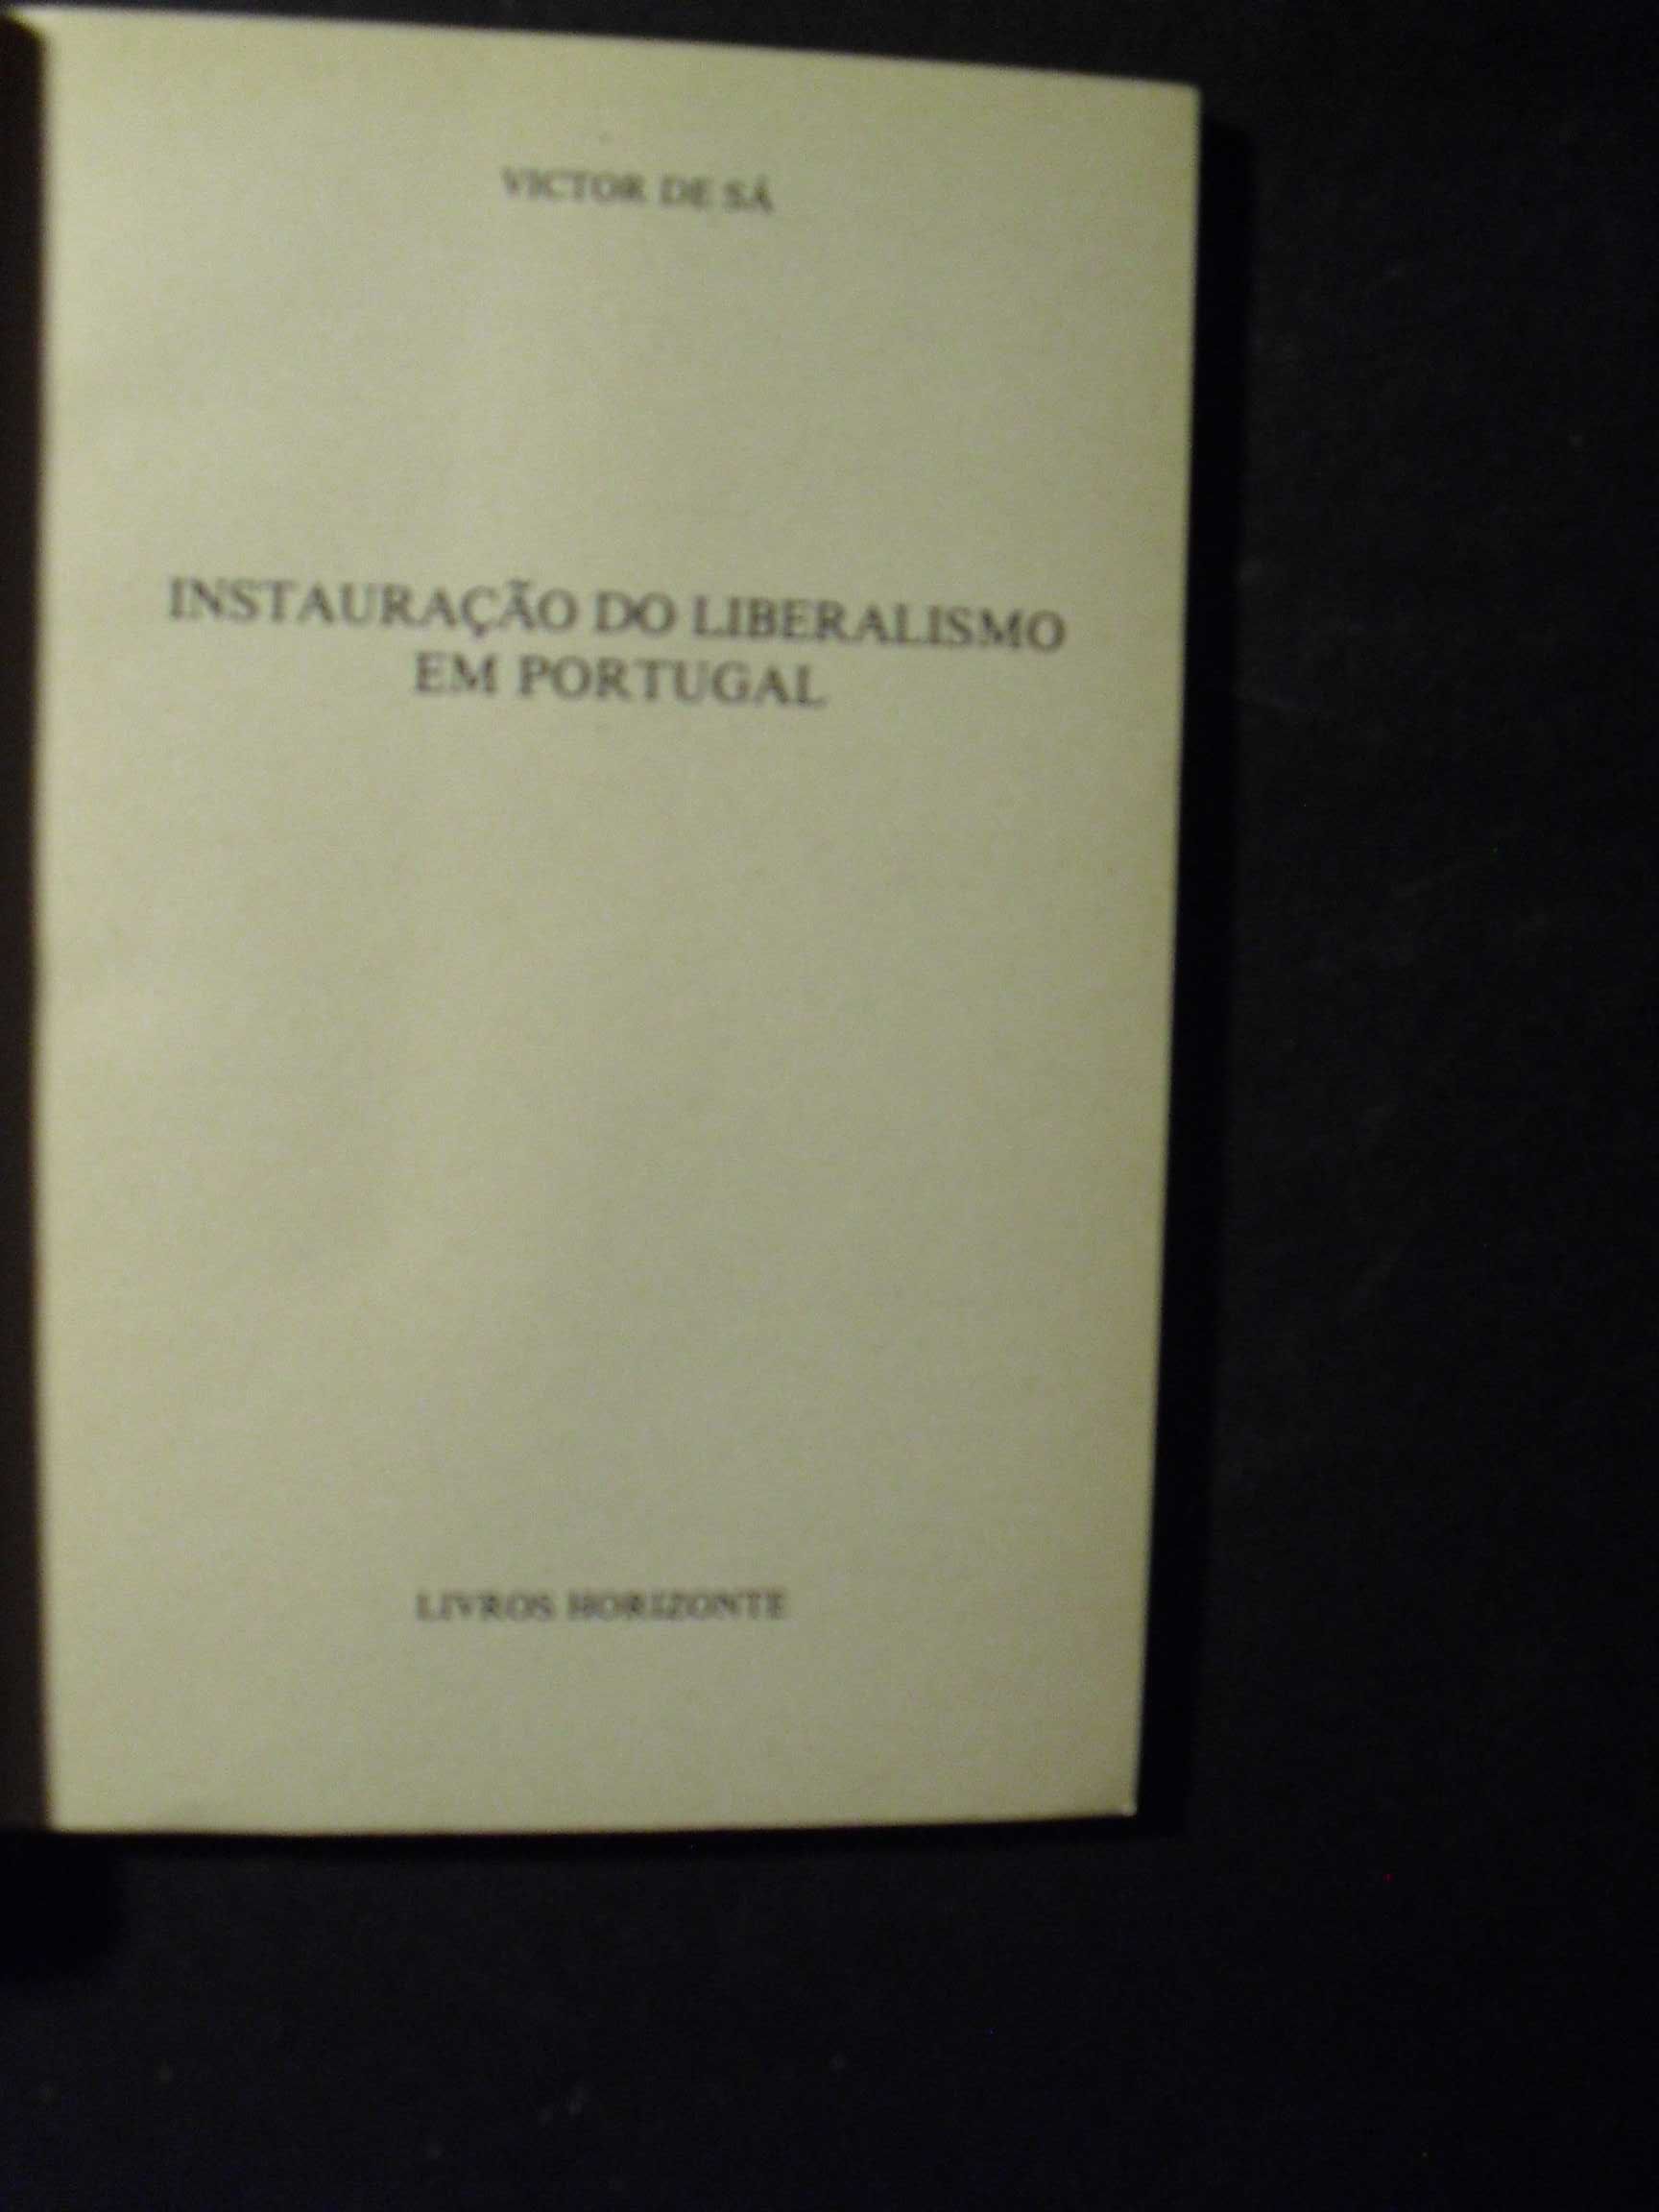 Sá (Victor de);Instauração do Liberalismo e Portugal